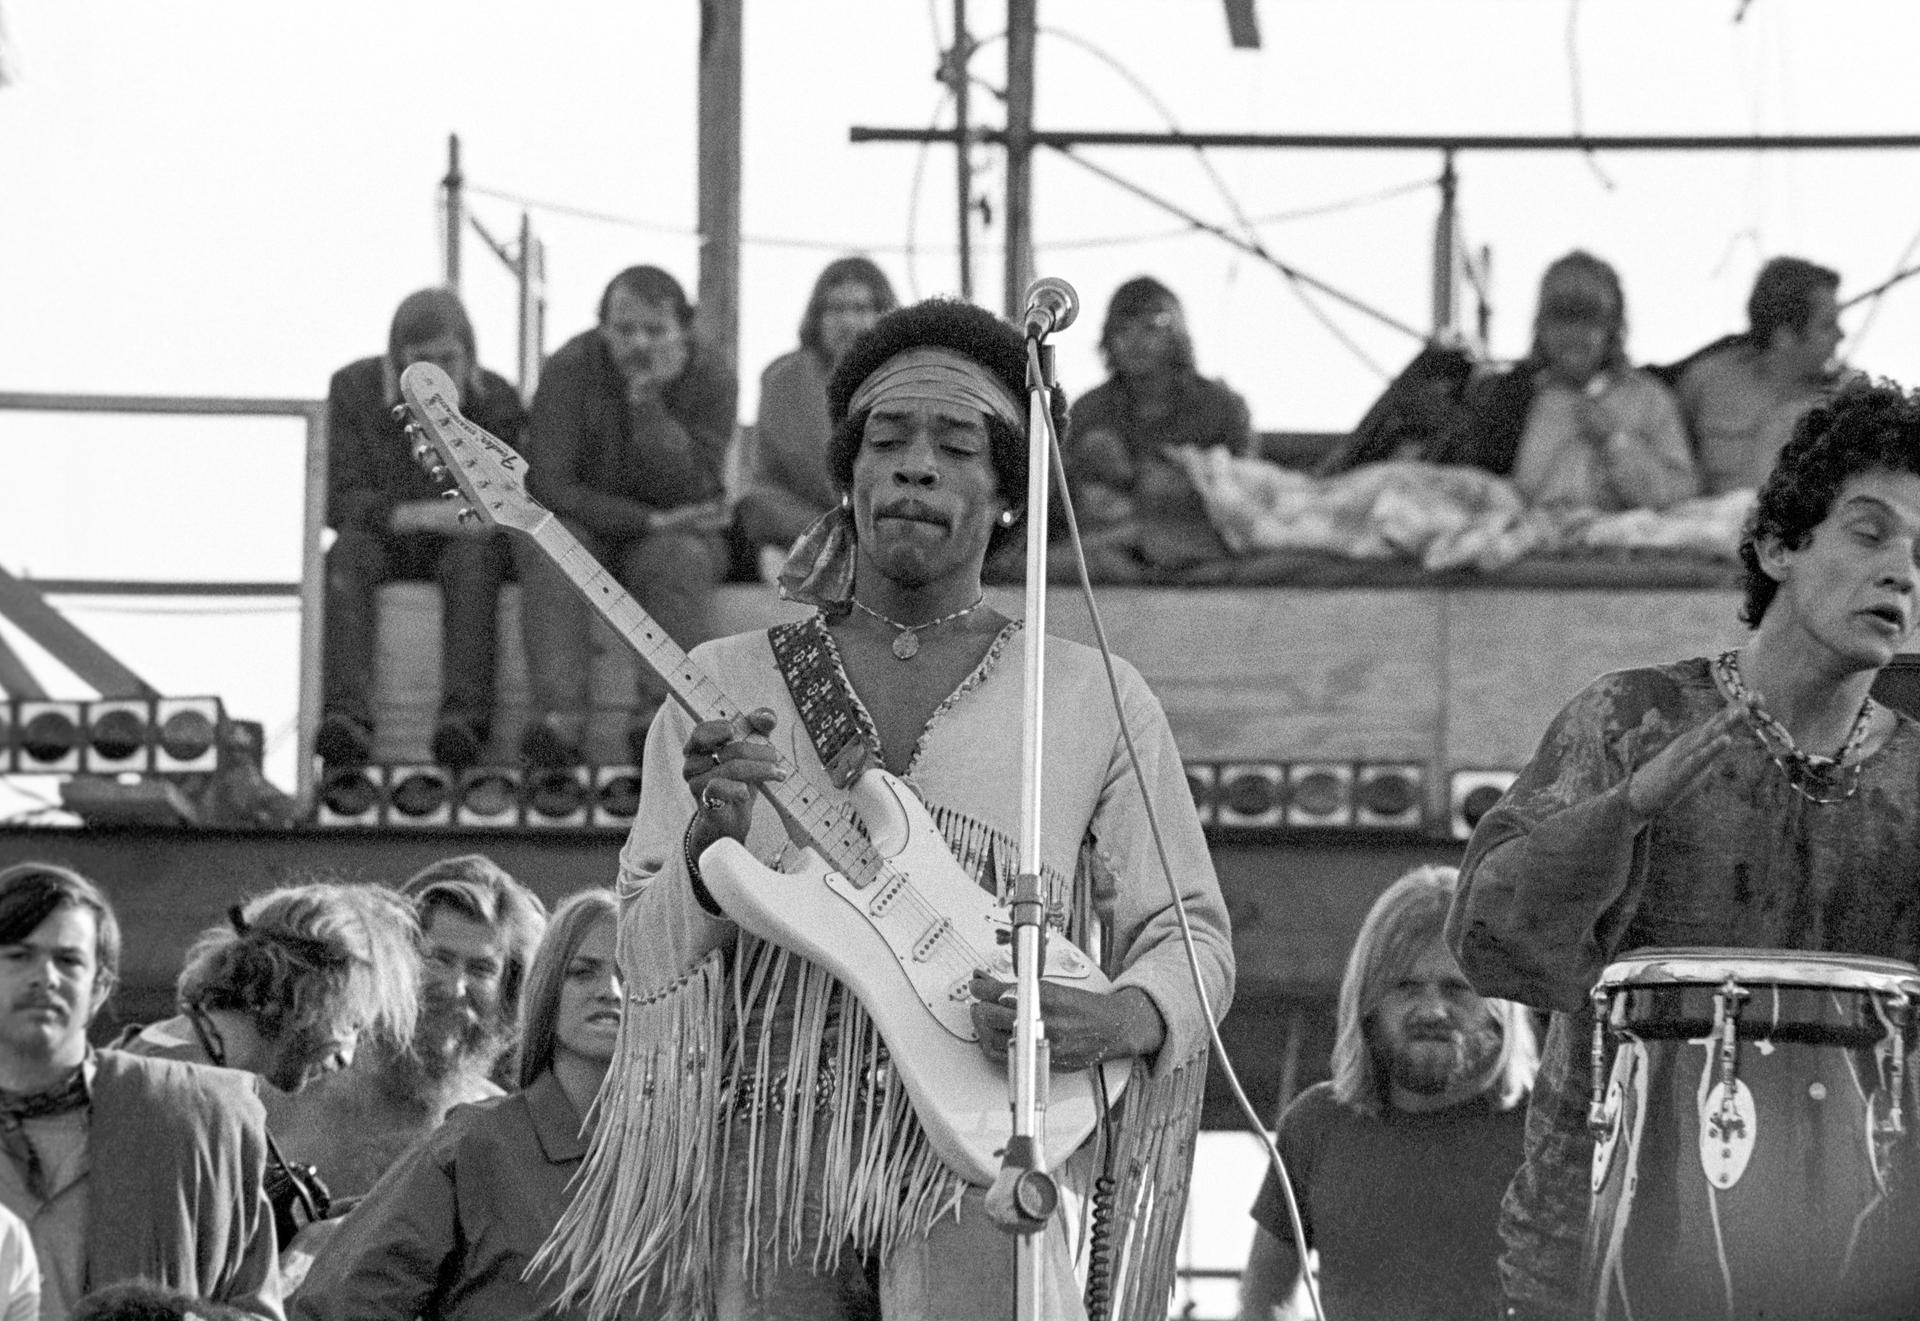 Jimi Hendrix plays at Woodstock.